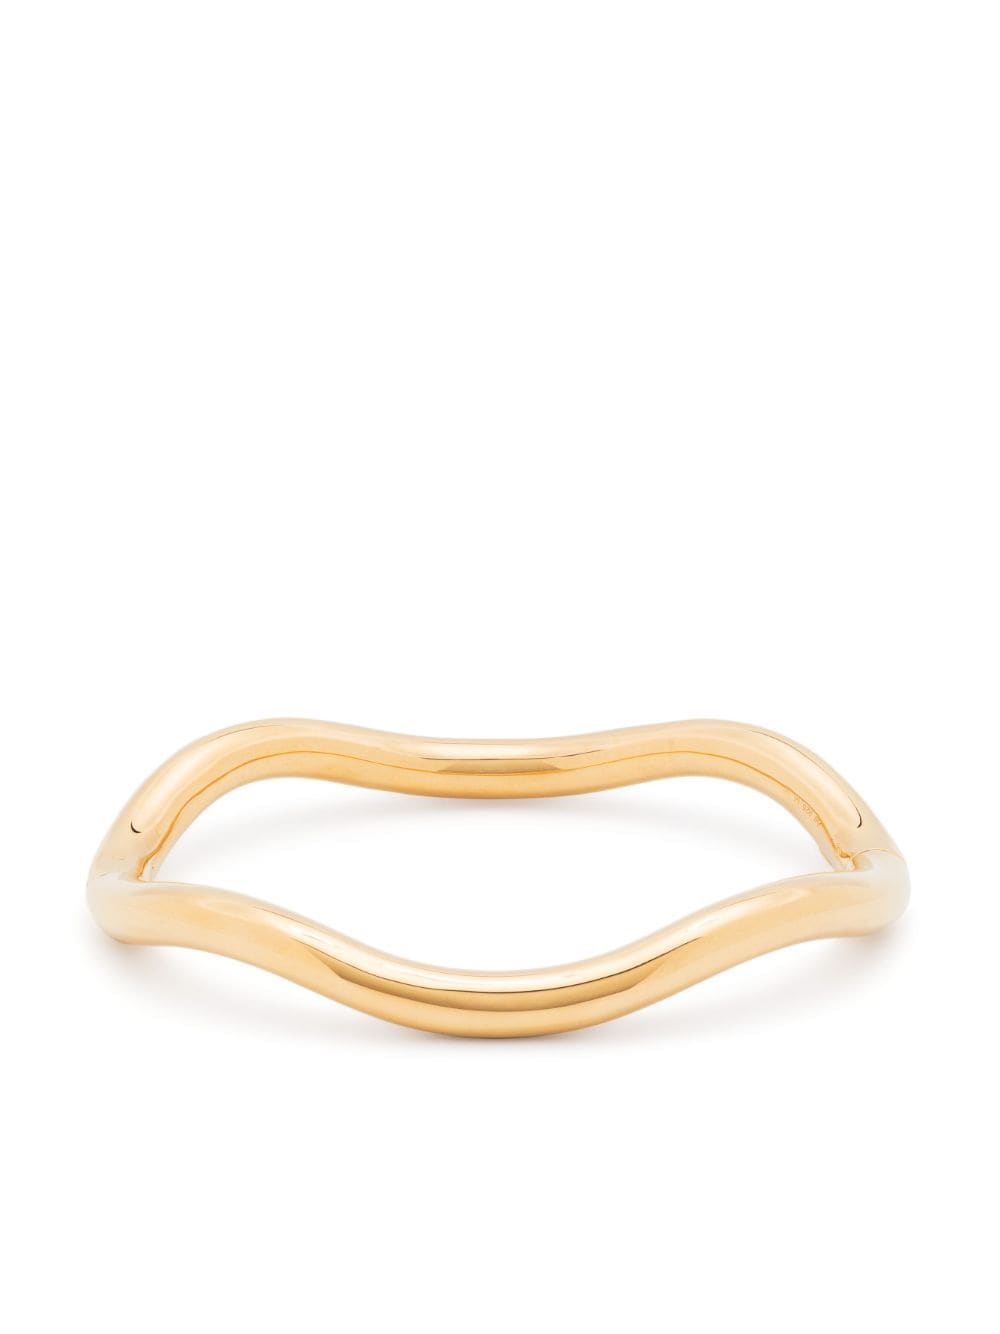 Charlotte Chesnais Wave gold-plated cuff bracelet von Charlotte Chesnais